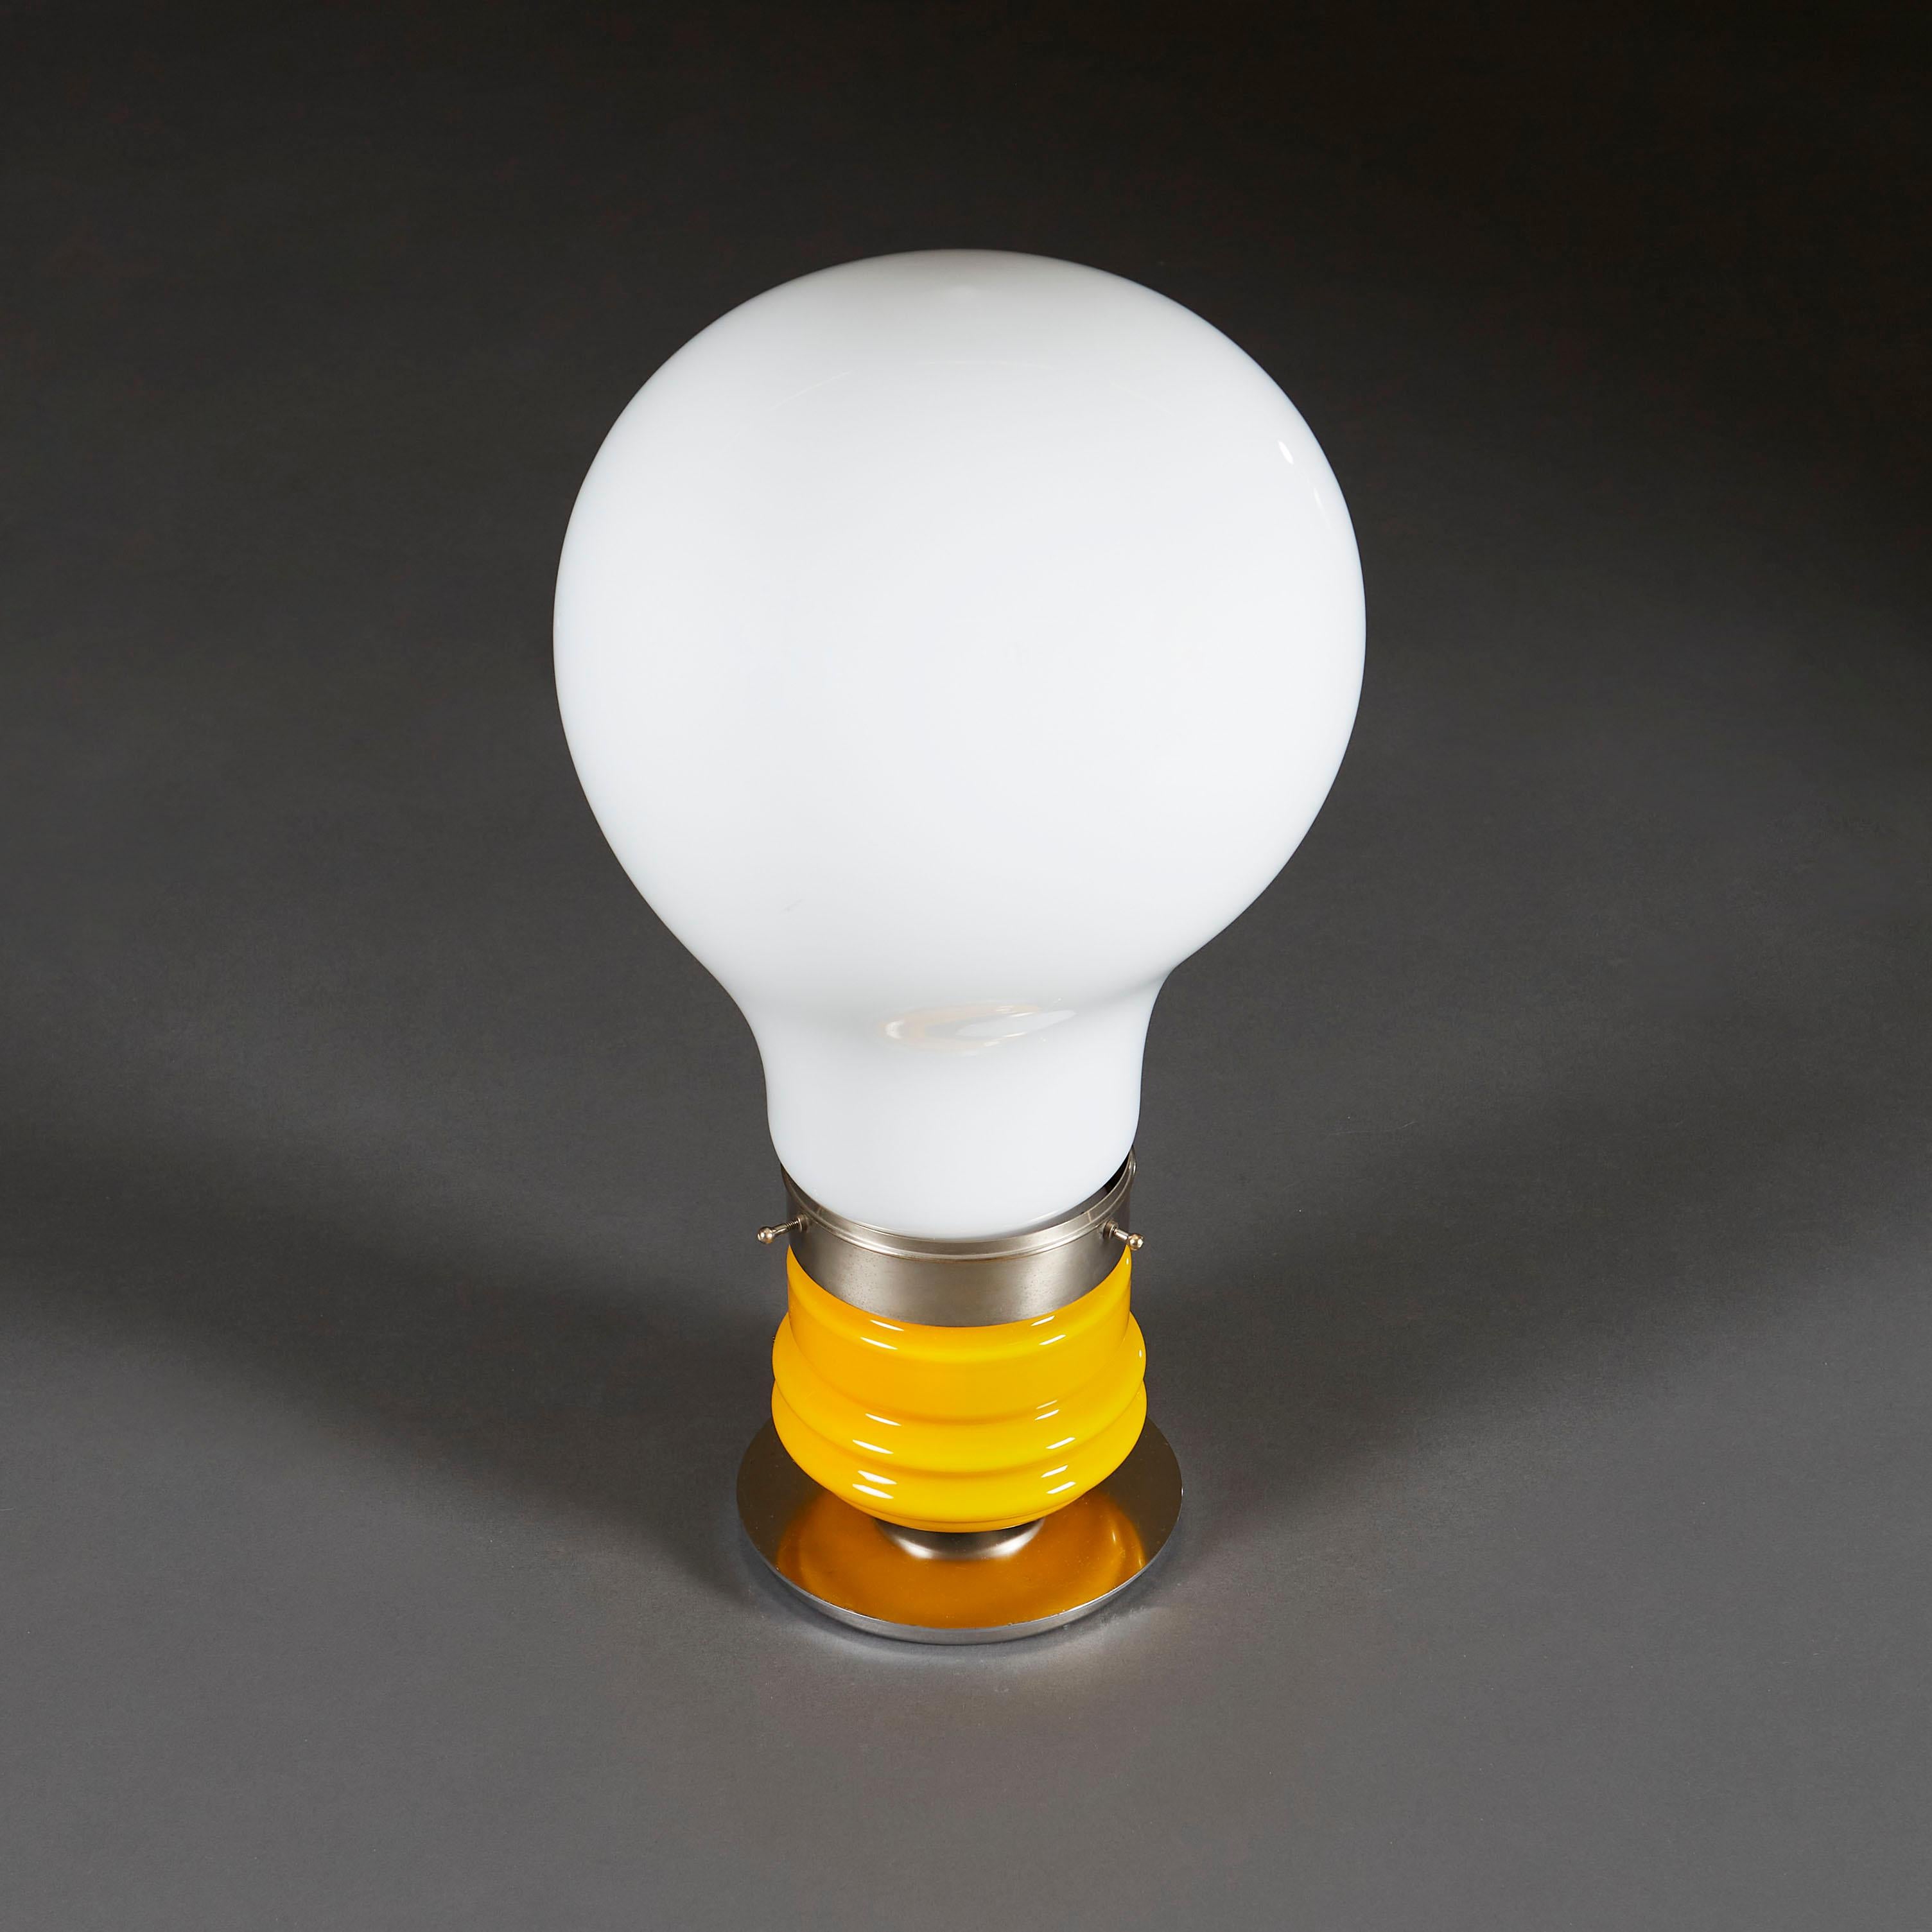 giant light bulb shaped lamp